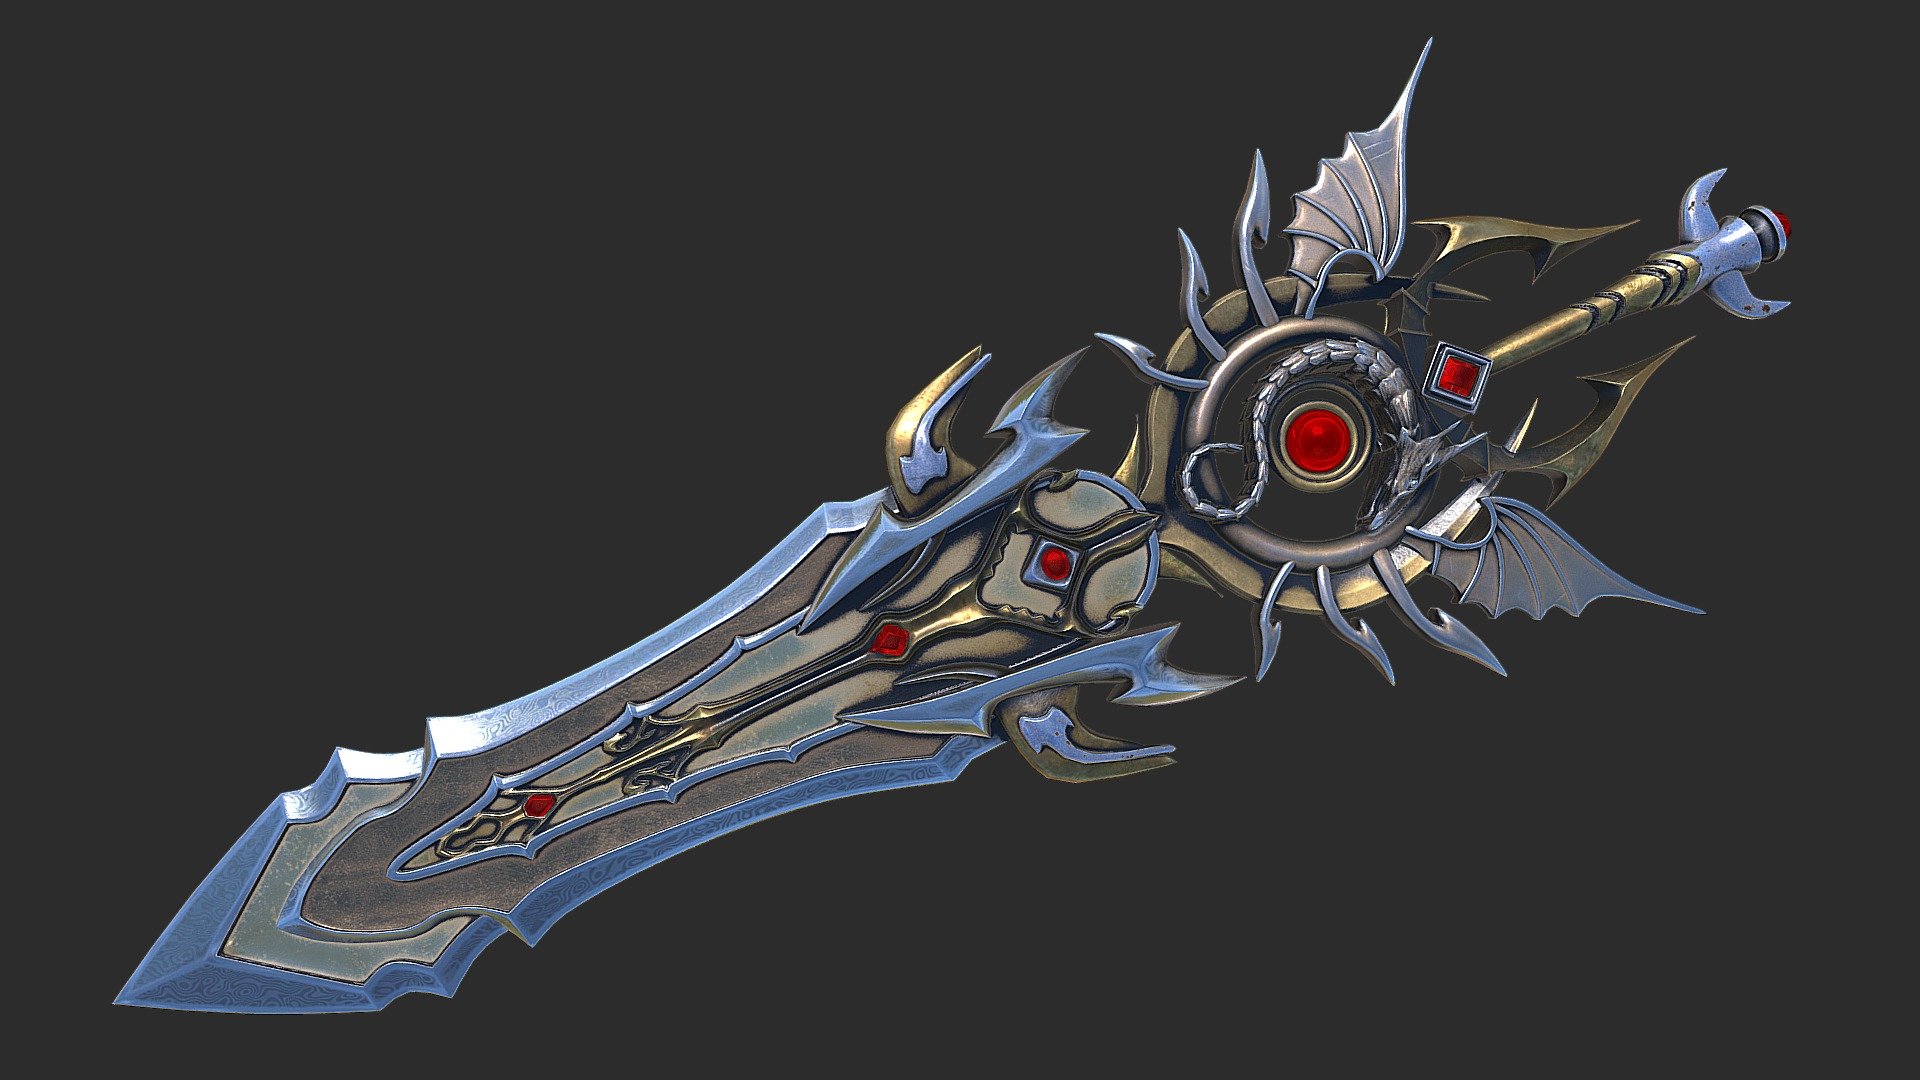 Fantasy_sword_11 - 3D model by Nicu_Tepes_Vulpe [44144dd] - Sketchfab